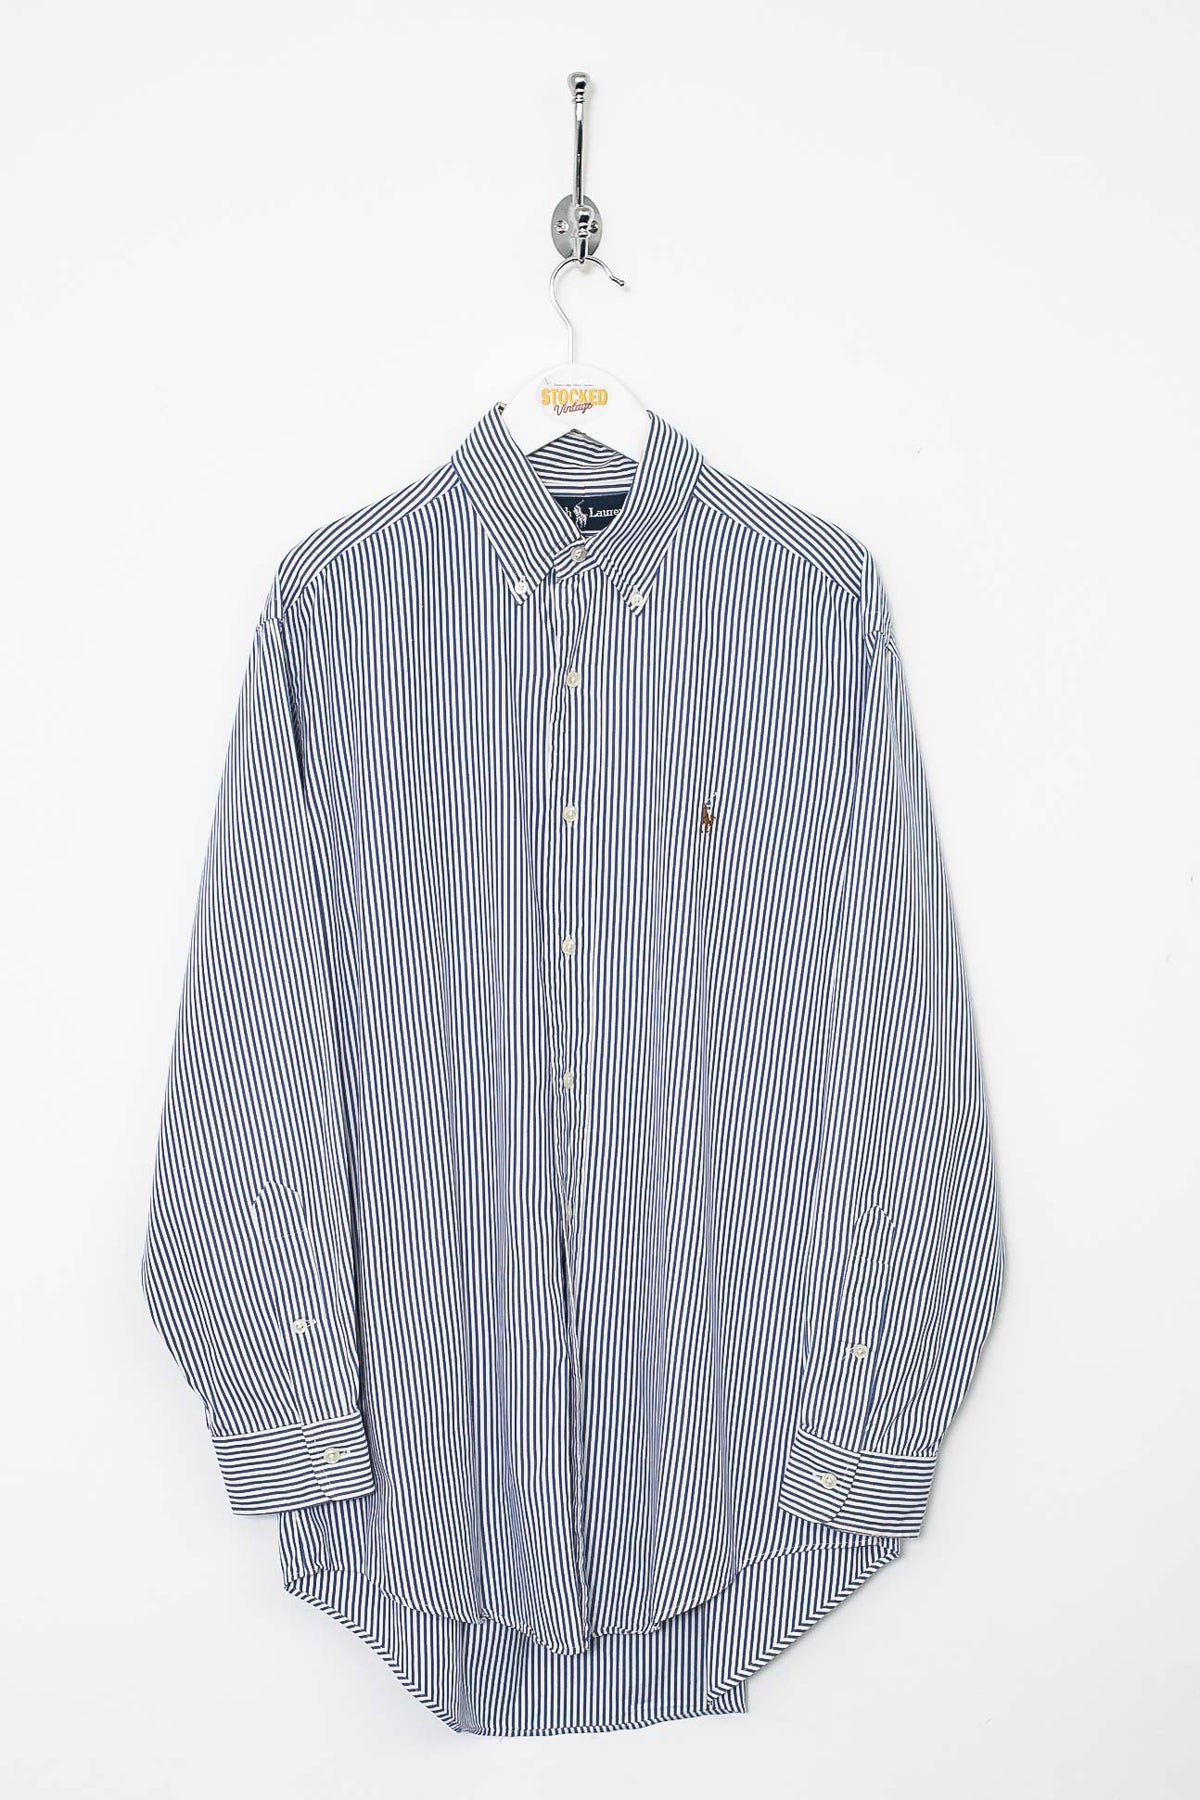 Ralph Lauren Shirt (L)